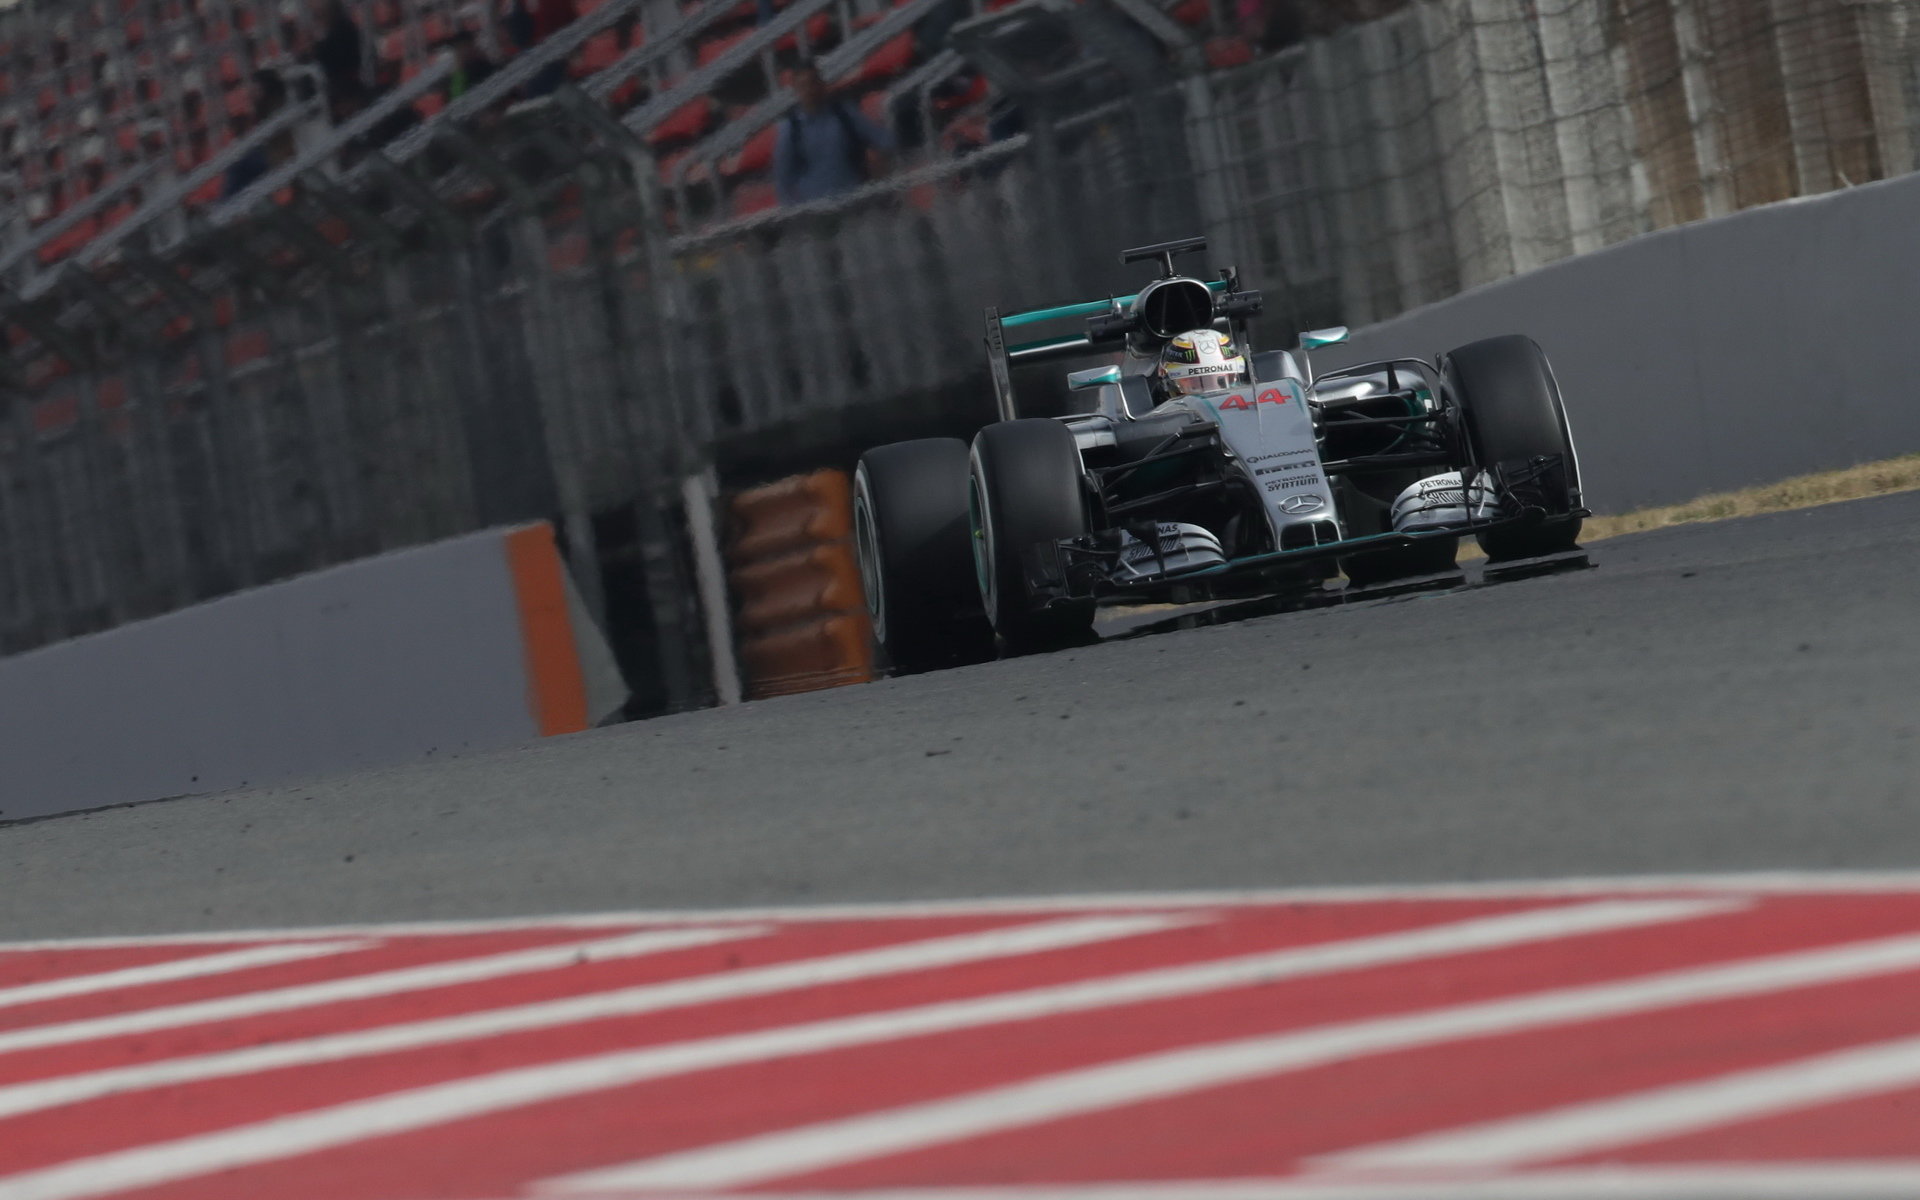 Dokáže Rosberg dnes ujet stejnou vzdálenost jako Hamilton včera? Mercedes má takový cíl...